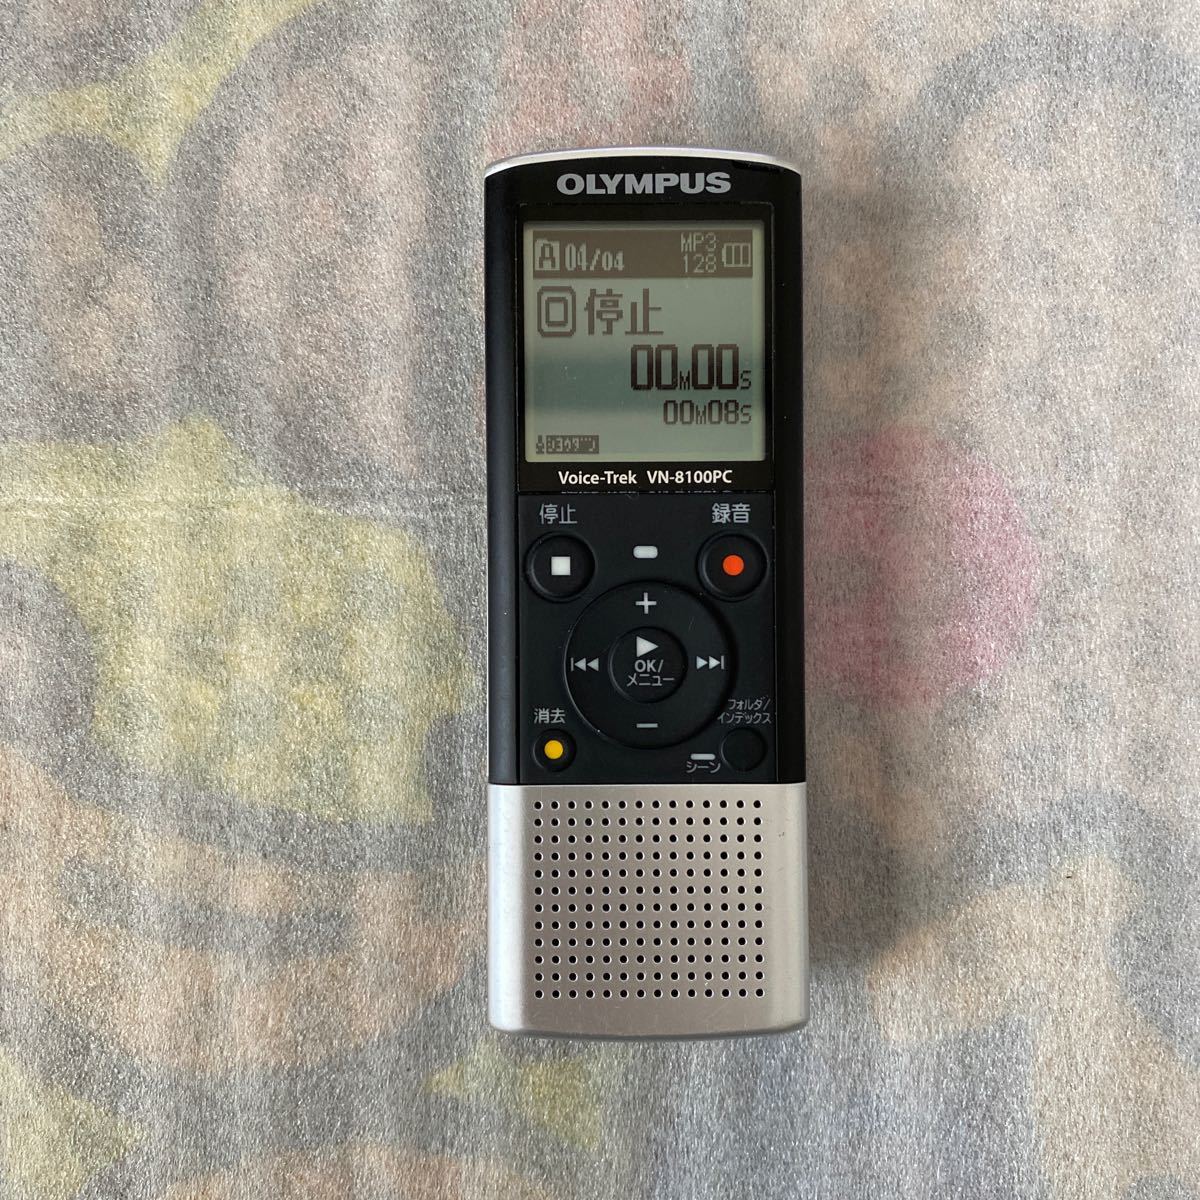  бесплатная доставка работа OK*OLYMPUS VN-8100PC IC магнитофон цифровой диктофон Olympus Voice-Trek